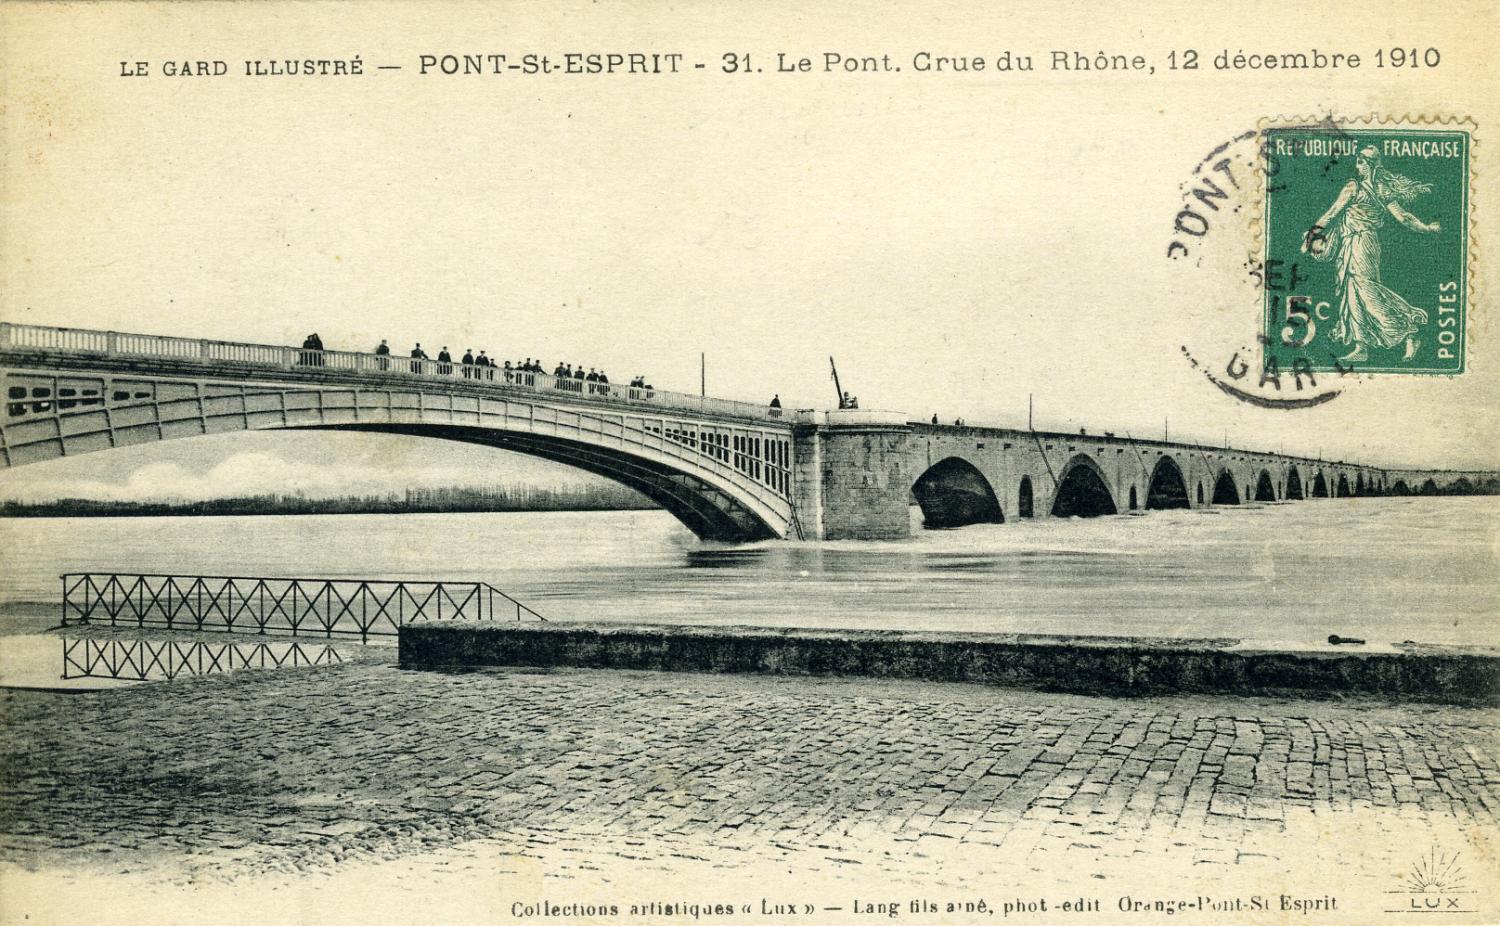 Le Gard illustré - Pont-St-Esprit